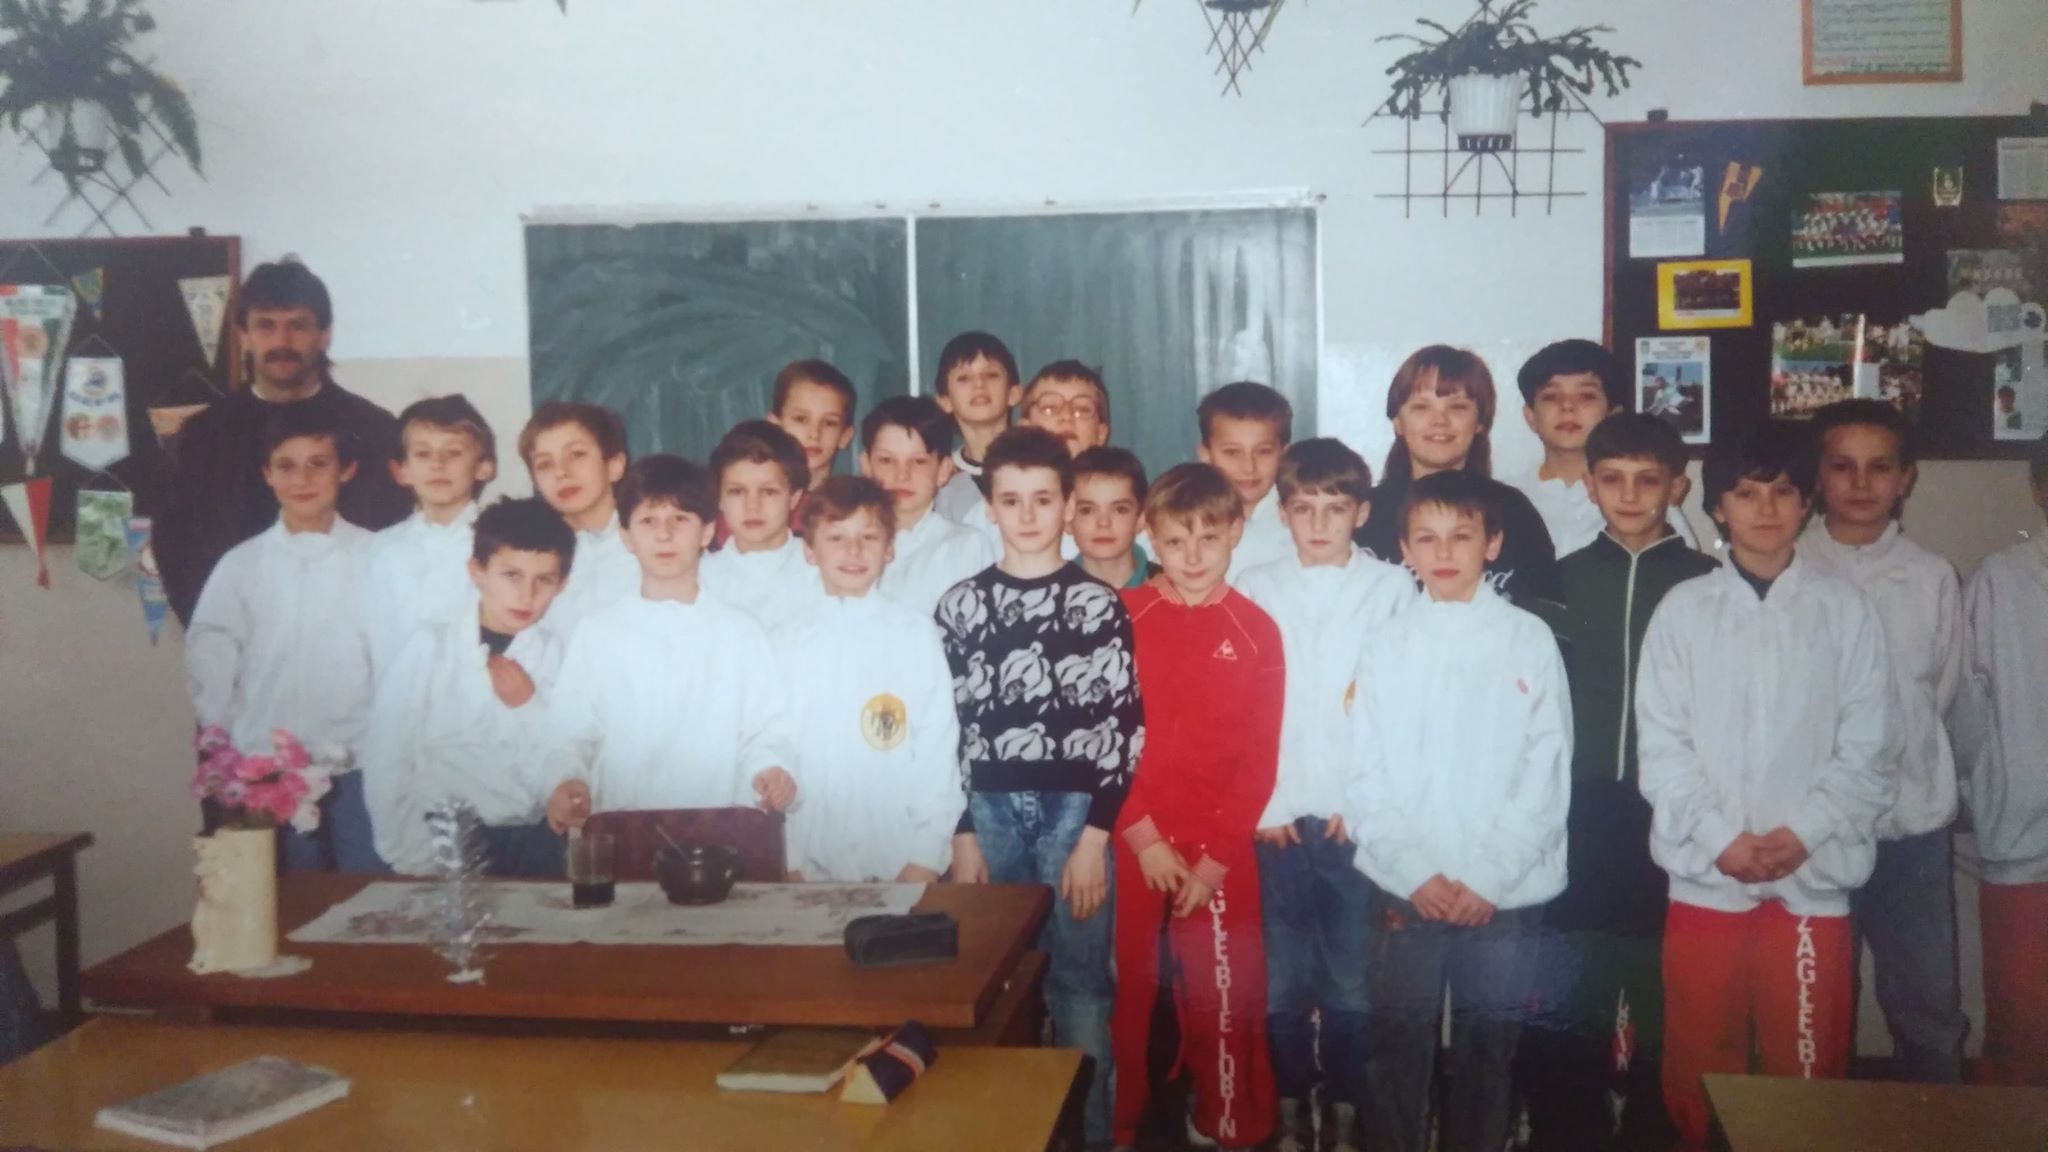 Artur Szymczak 1992 r. wizyta Koszara w naszej klasie.